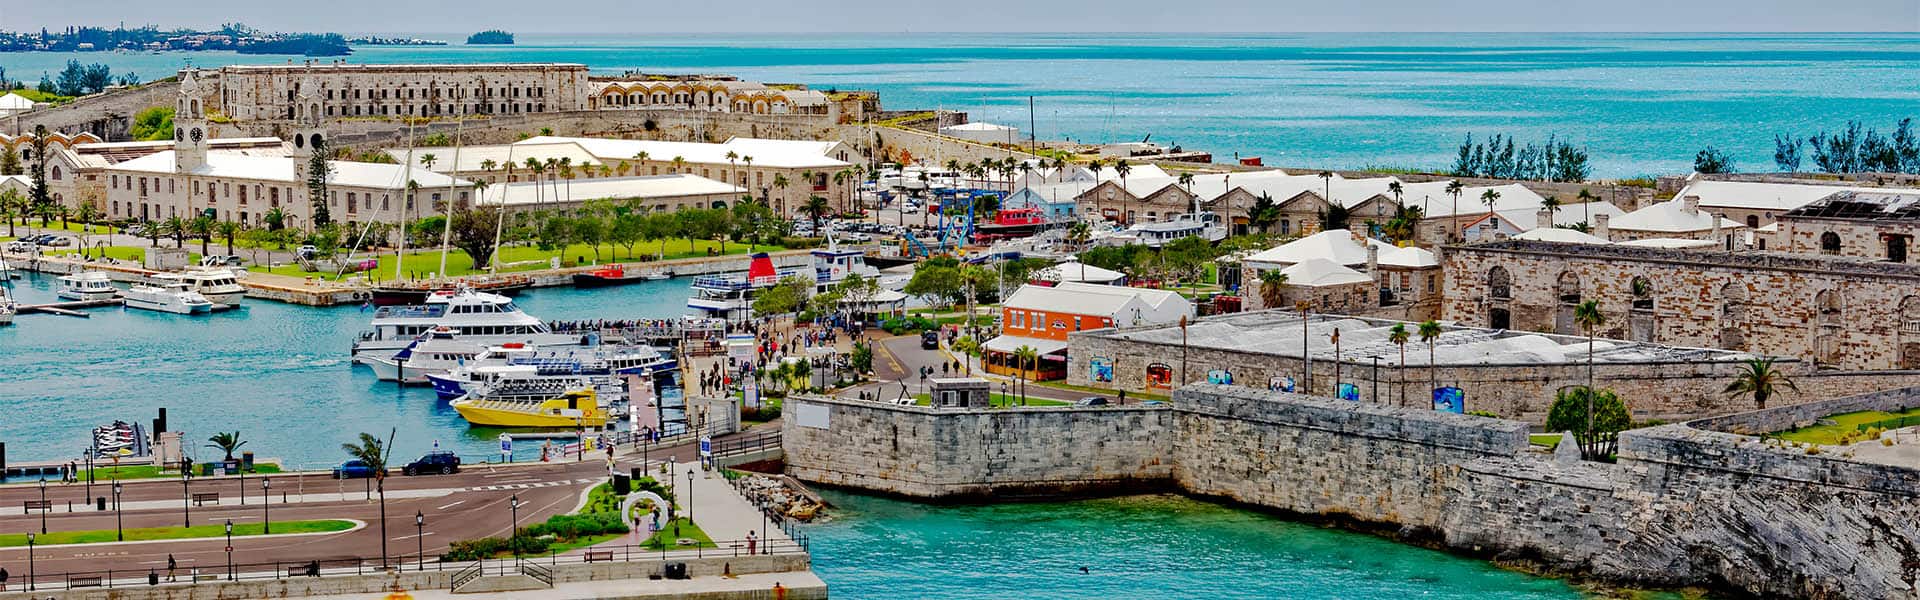 Bermuda & Caribbean: Puerto Rico & Dominican Republic